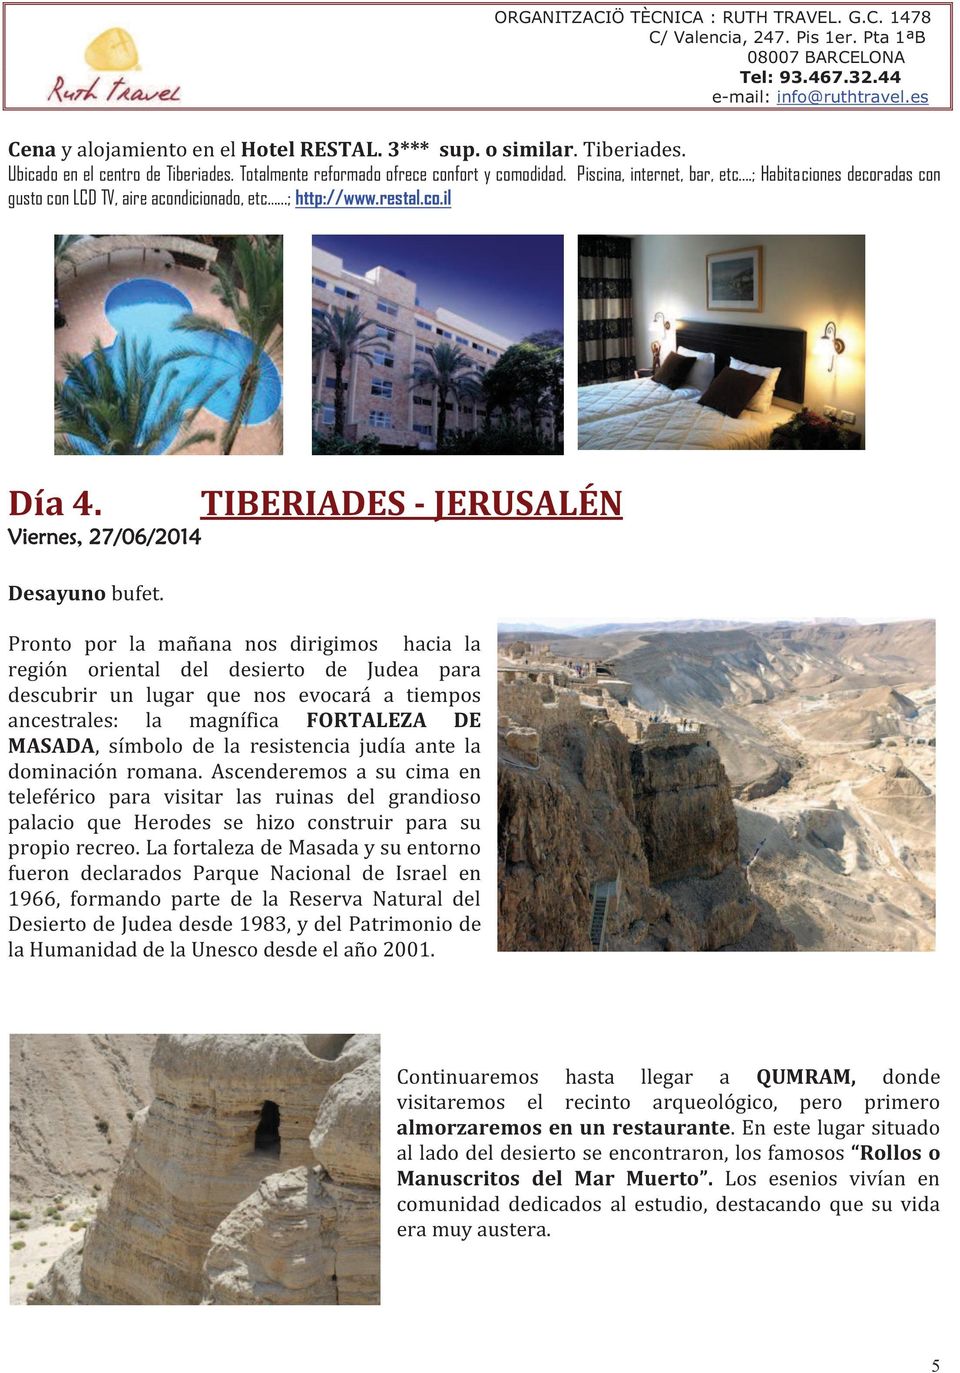 Viernes, 27/06/2014 TIBERIADES - JERUSALÉN Pronto por la mañana nos dirigimos hacia la región oriental del desierto de Judea para descubrir un lugar que nos evocará a tiempos ancestrales: la